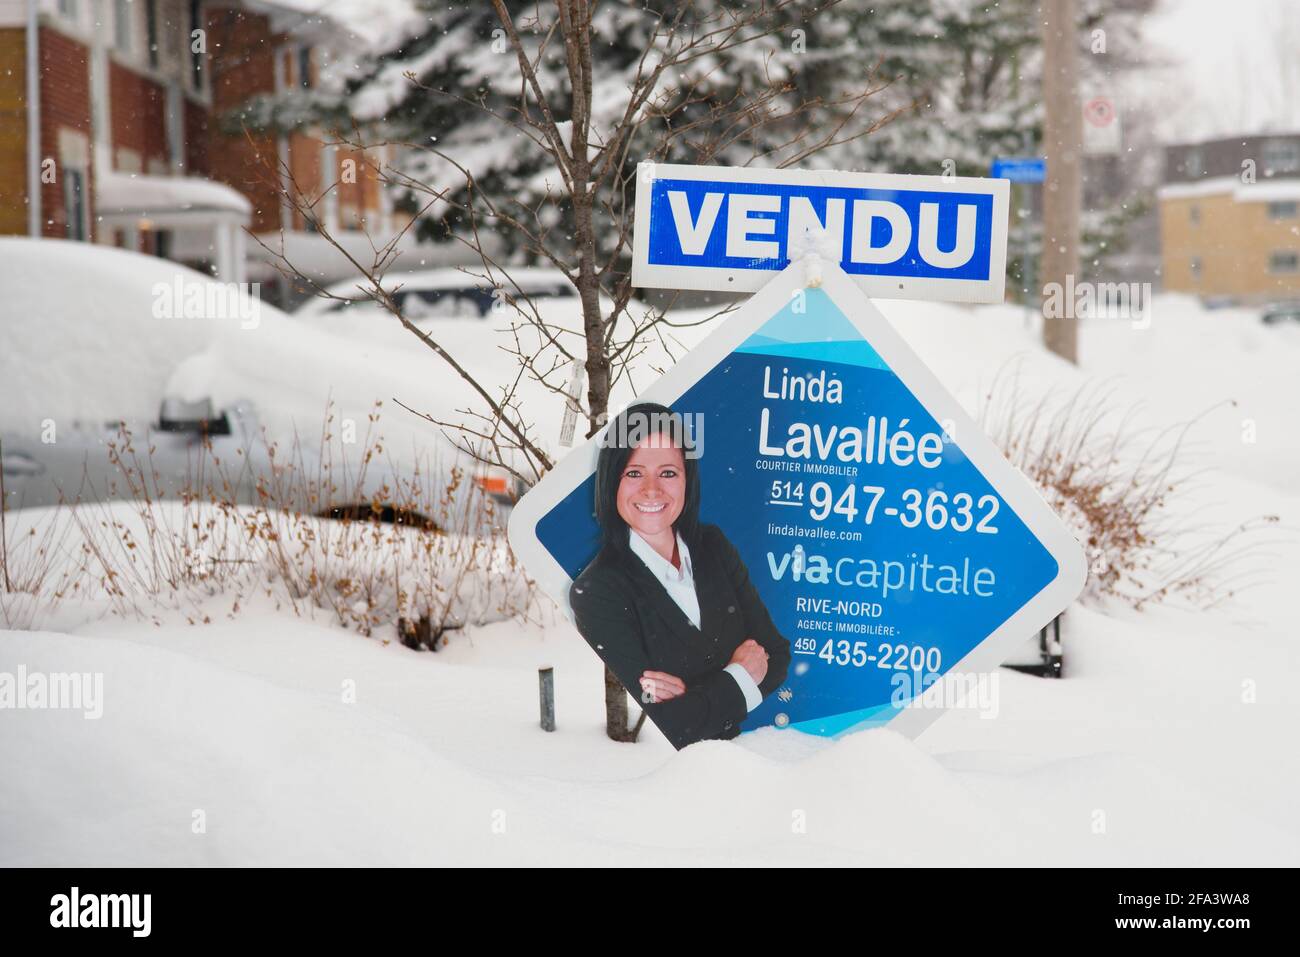 Haus zum Verkauf "old" Zeichen in Französisch, mit einem Bild des immobilienmaklers. Laval, Provinz Quebec, Kanada. Stockfoto